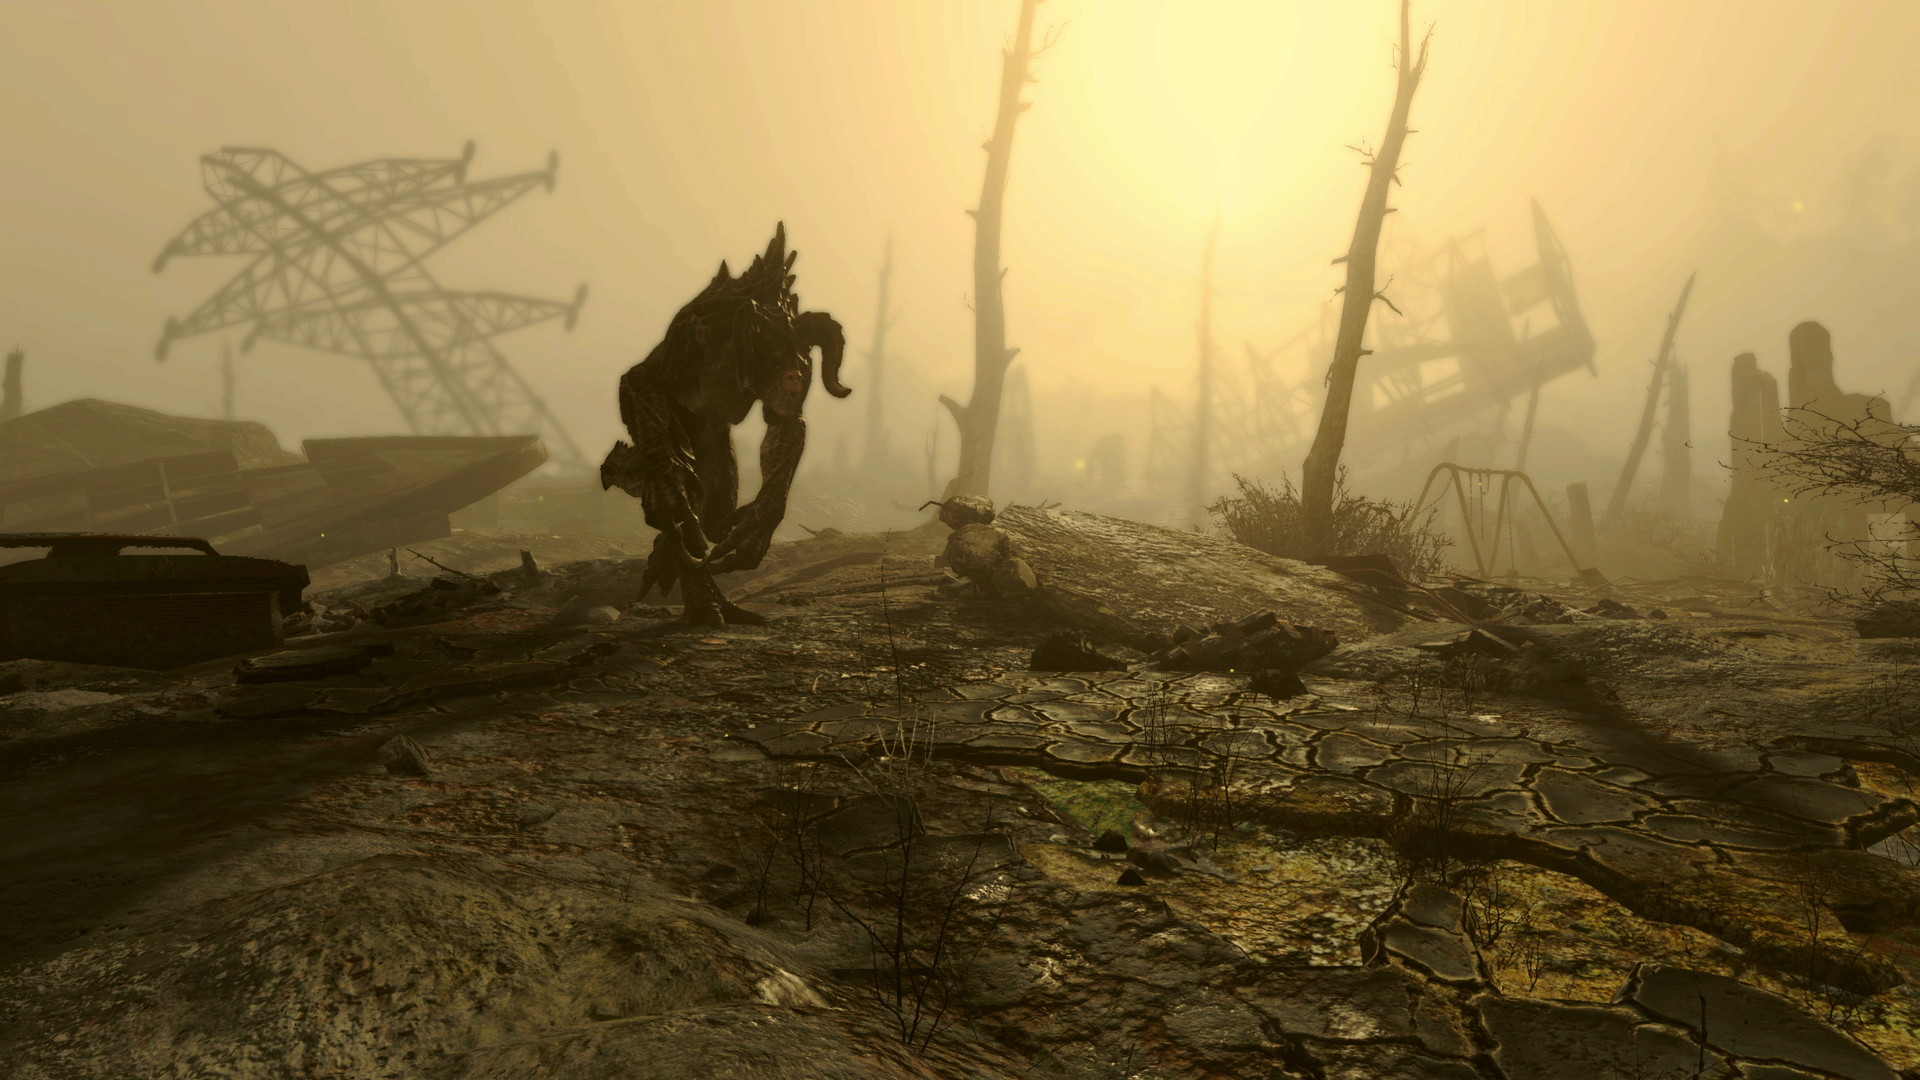 Mod de realismo de Fallout 4: Una criatura monstruosa, el Deathclaw del juego de rol de Bethesda Fallout 4